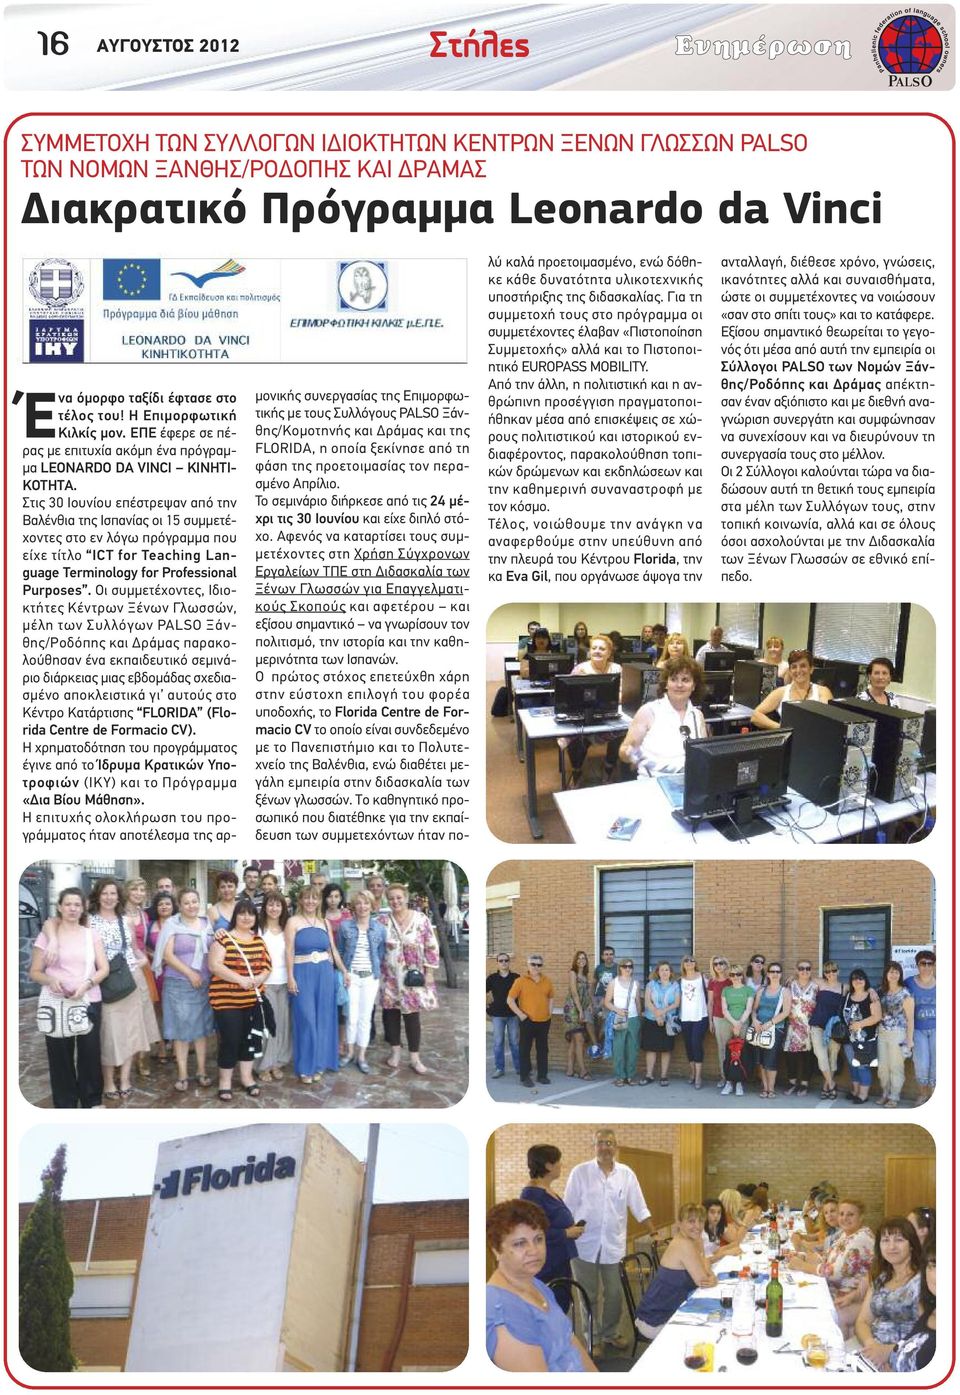 Στις 30 Ιουνίου επέστρεψαν από την Βαλένθια της Ισπανίας οι 15 συµµετέχοντες στο εν λόγω πρόγραµµα που είχε τίτλο ICT for Teaching Language Terminology for Pressional Purposes.